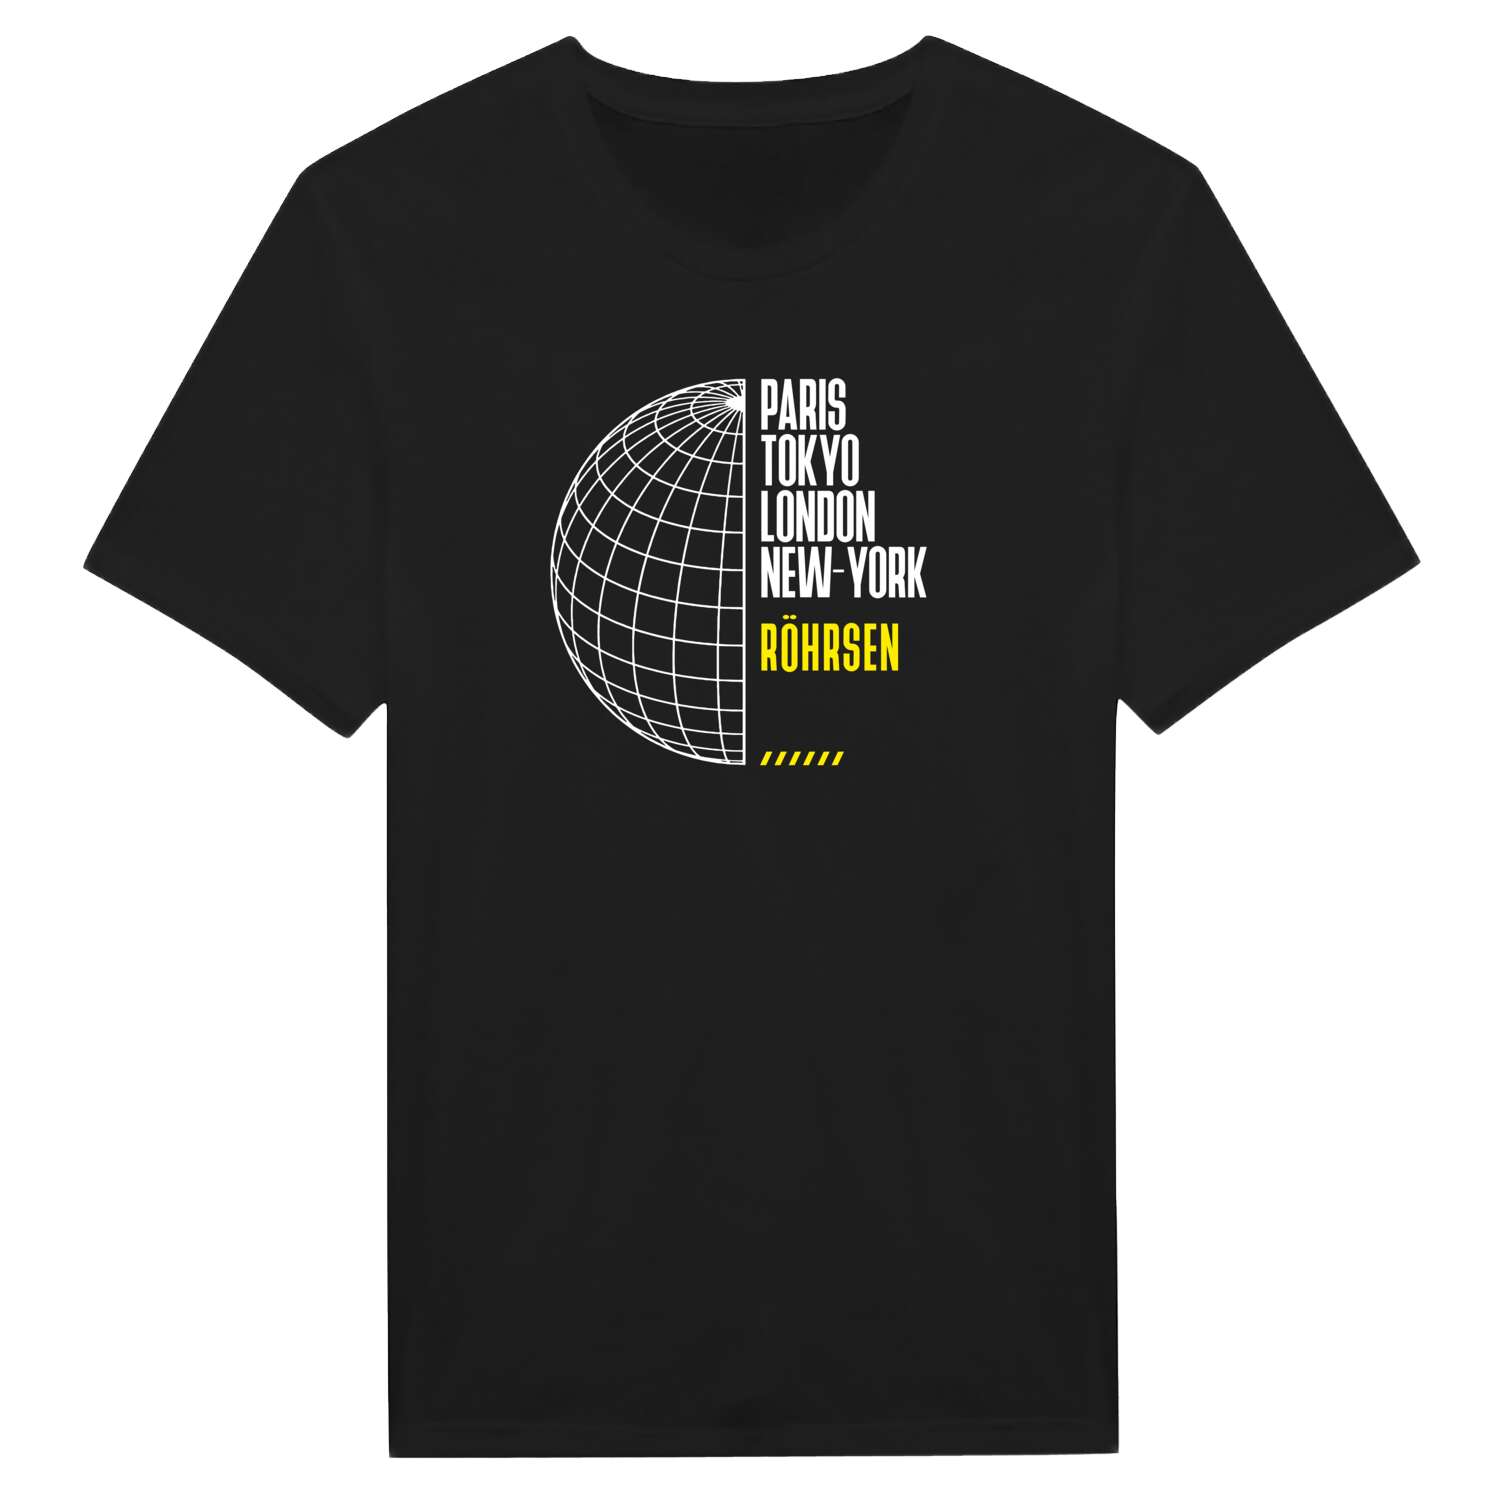 Röhrsen T-Shirt »Paris Tokyo London«